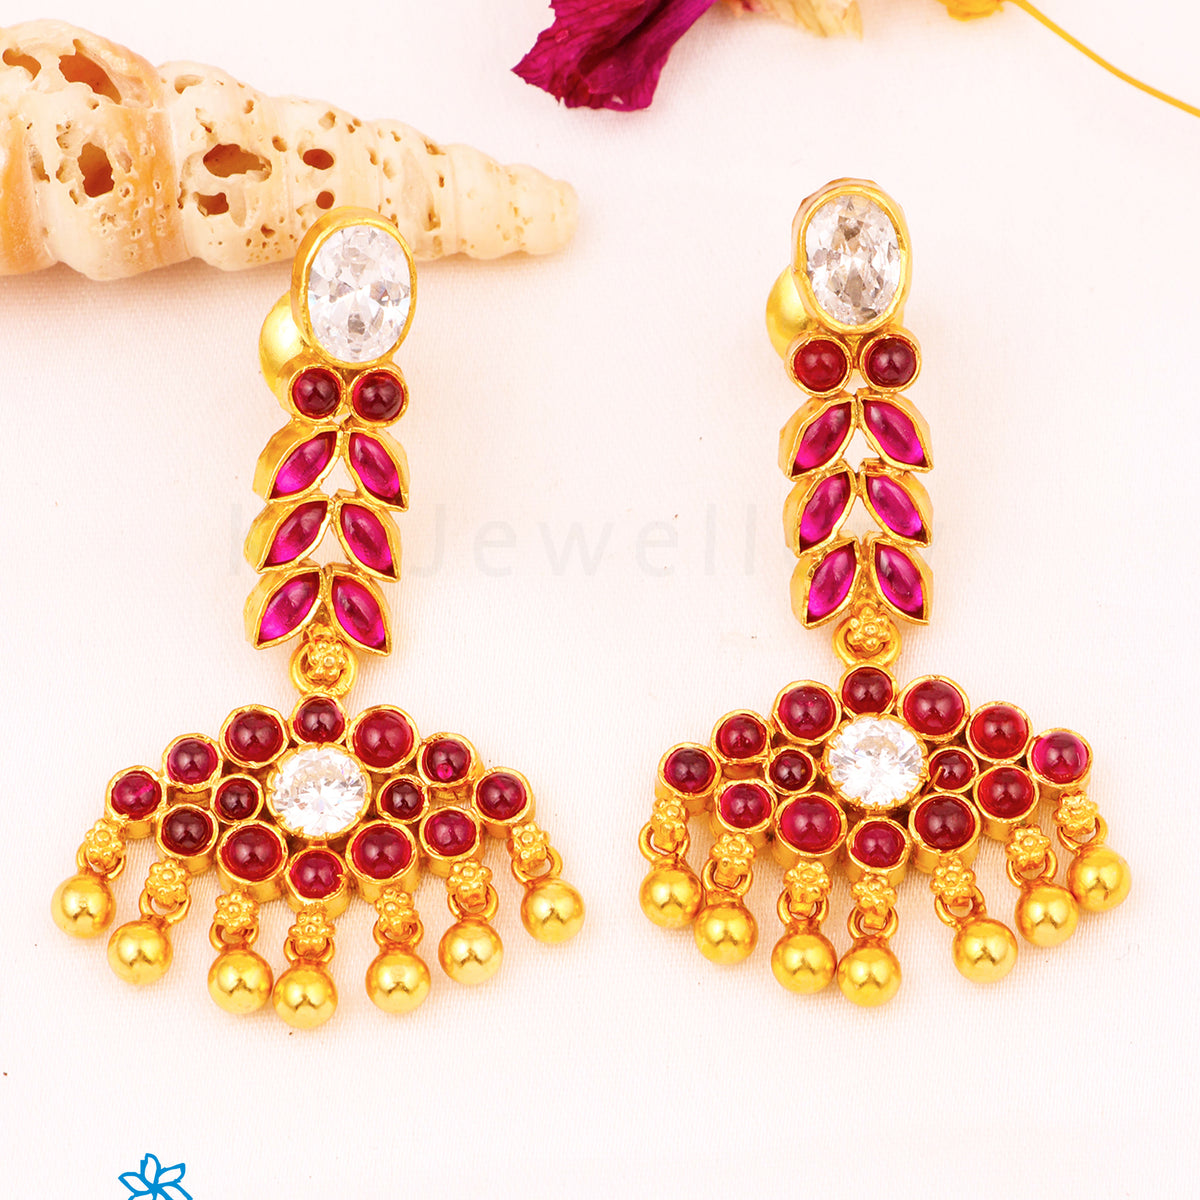 Kempu earrings | Gold jewelry necklace, Jewelry patterns, Jewelry design  earrings